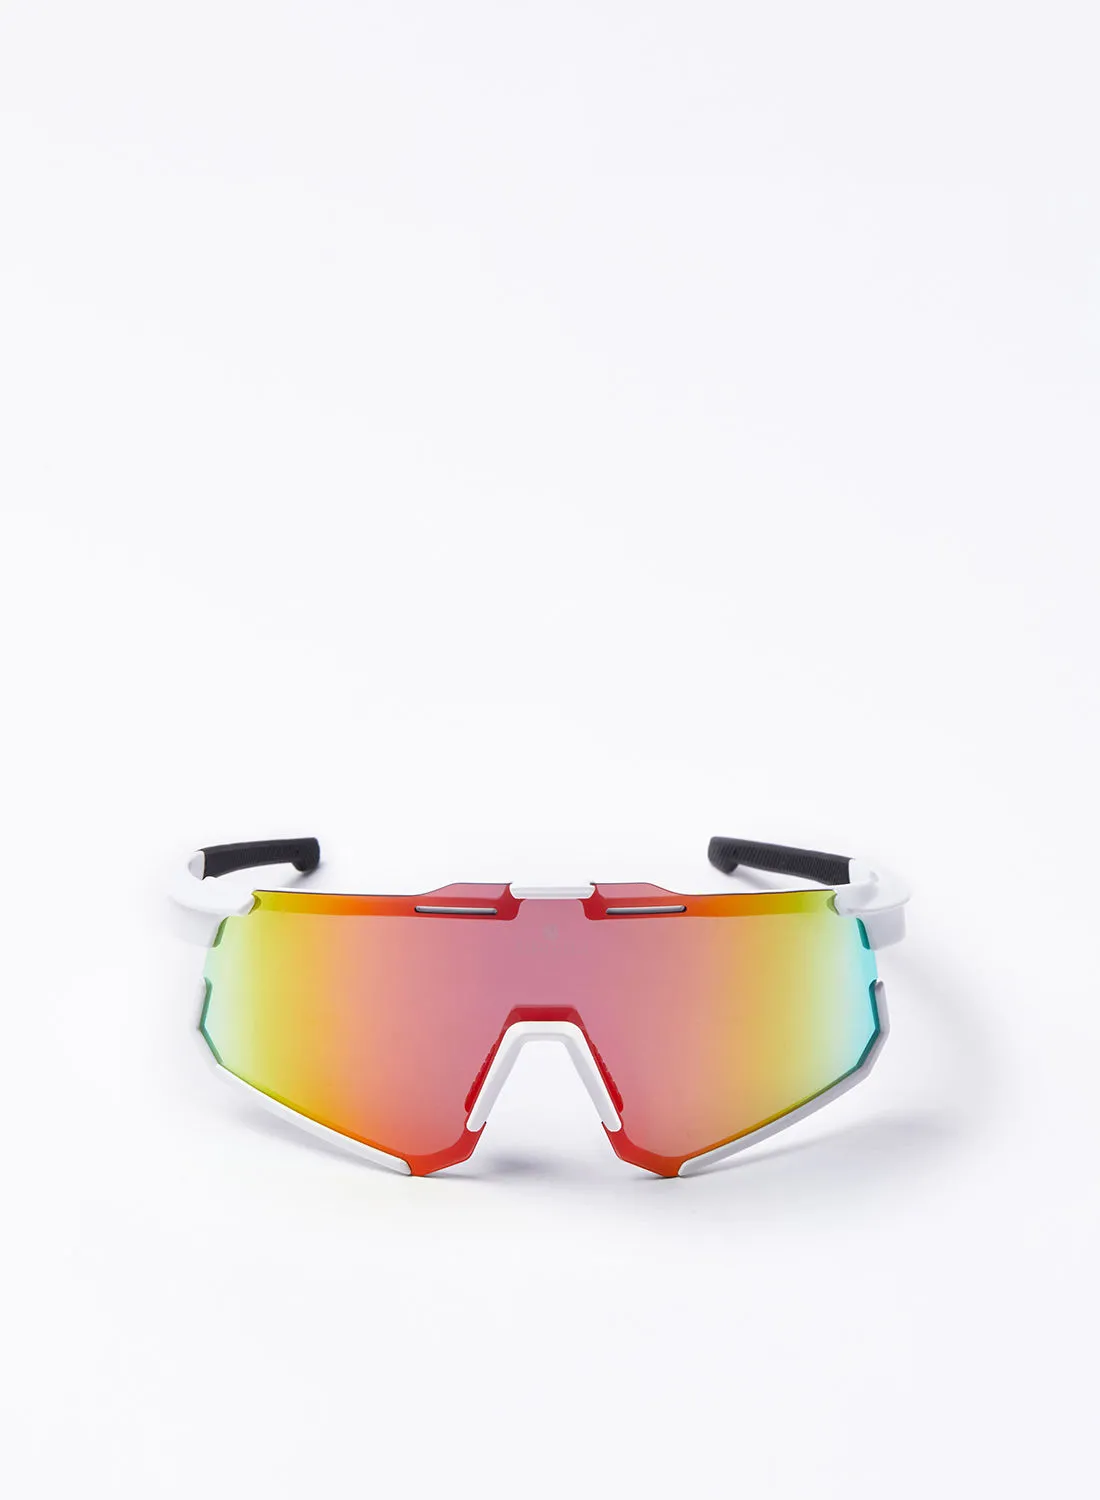 نظارة شمسية لركوب الدراجات من Athletiq - نادي أثليتيك جبل السوداء - إطار أبيض مع عدسة عاكسة متعددة الطبقات باللون الأحمر